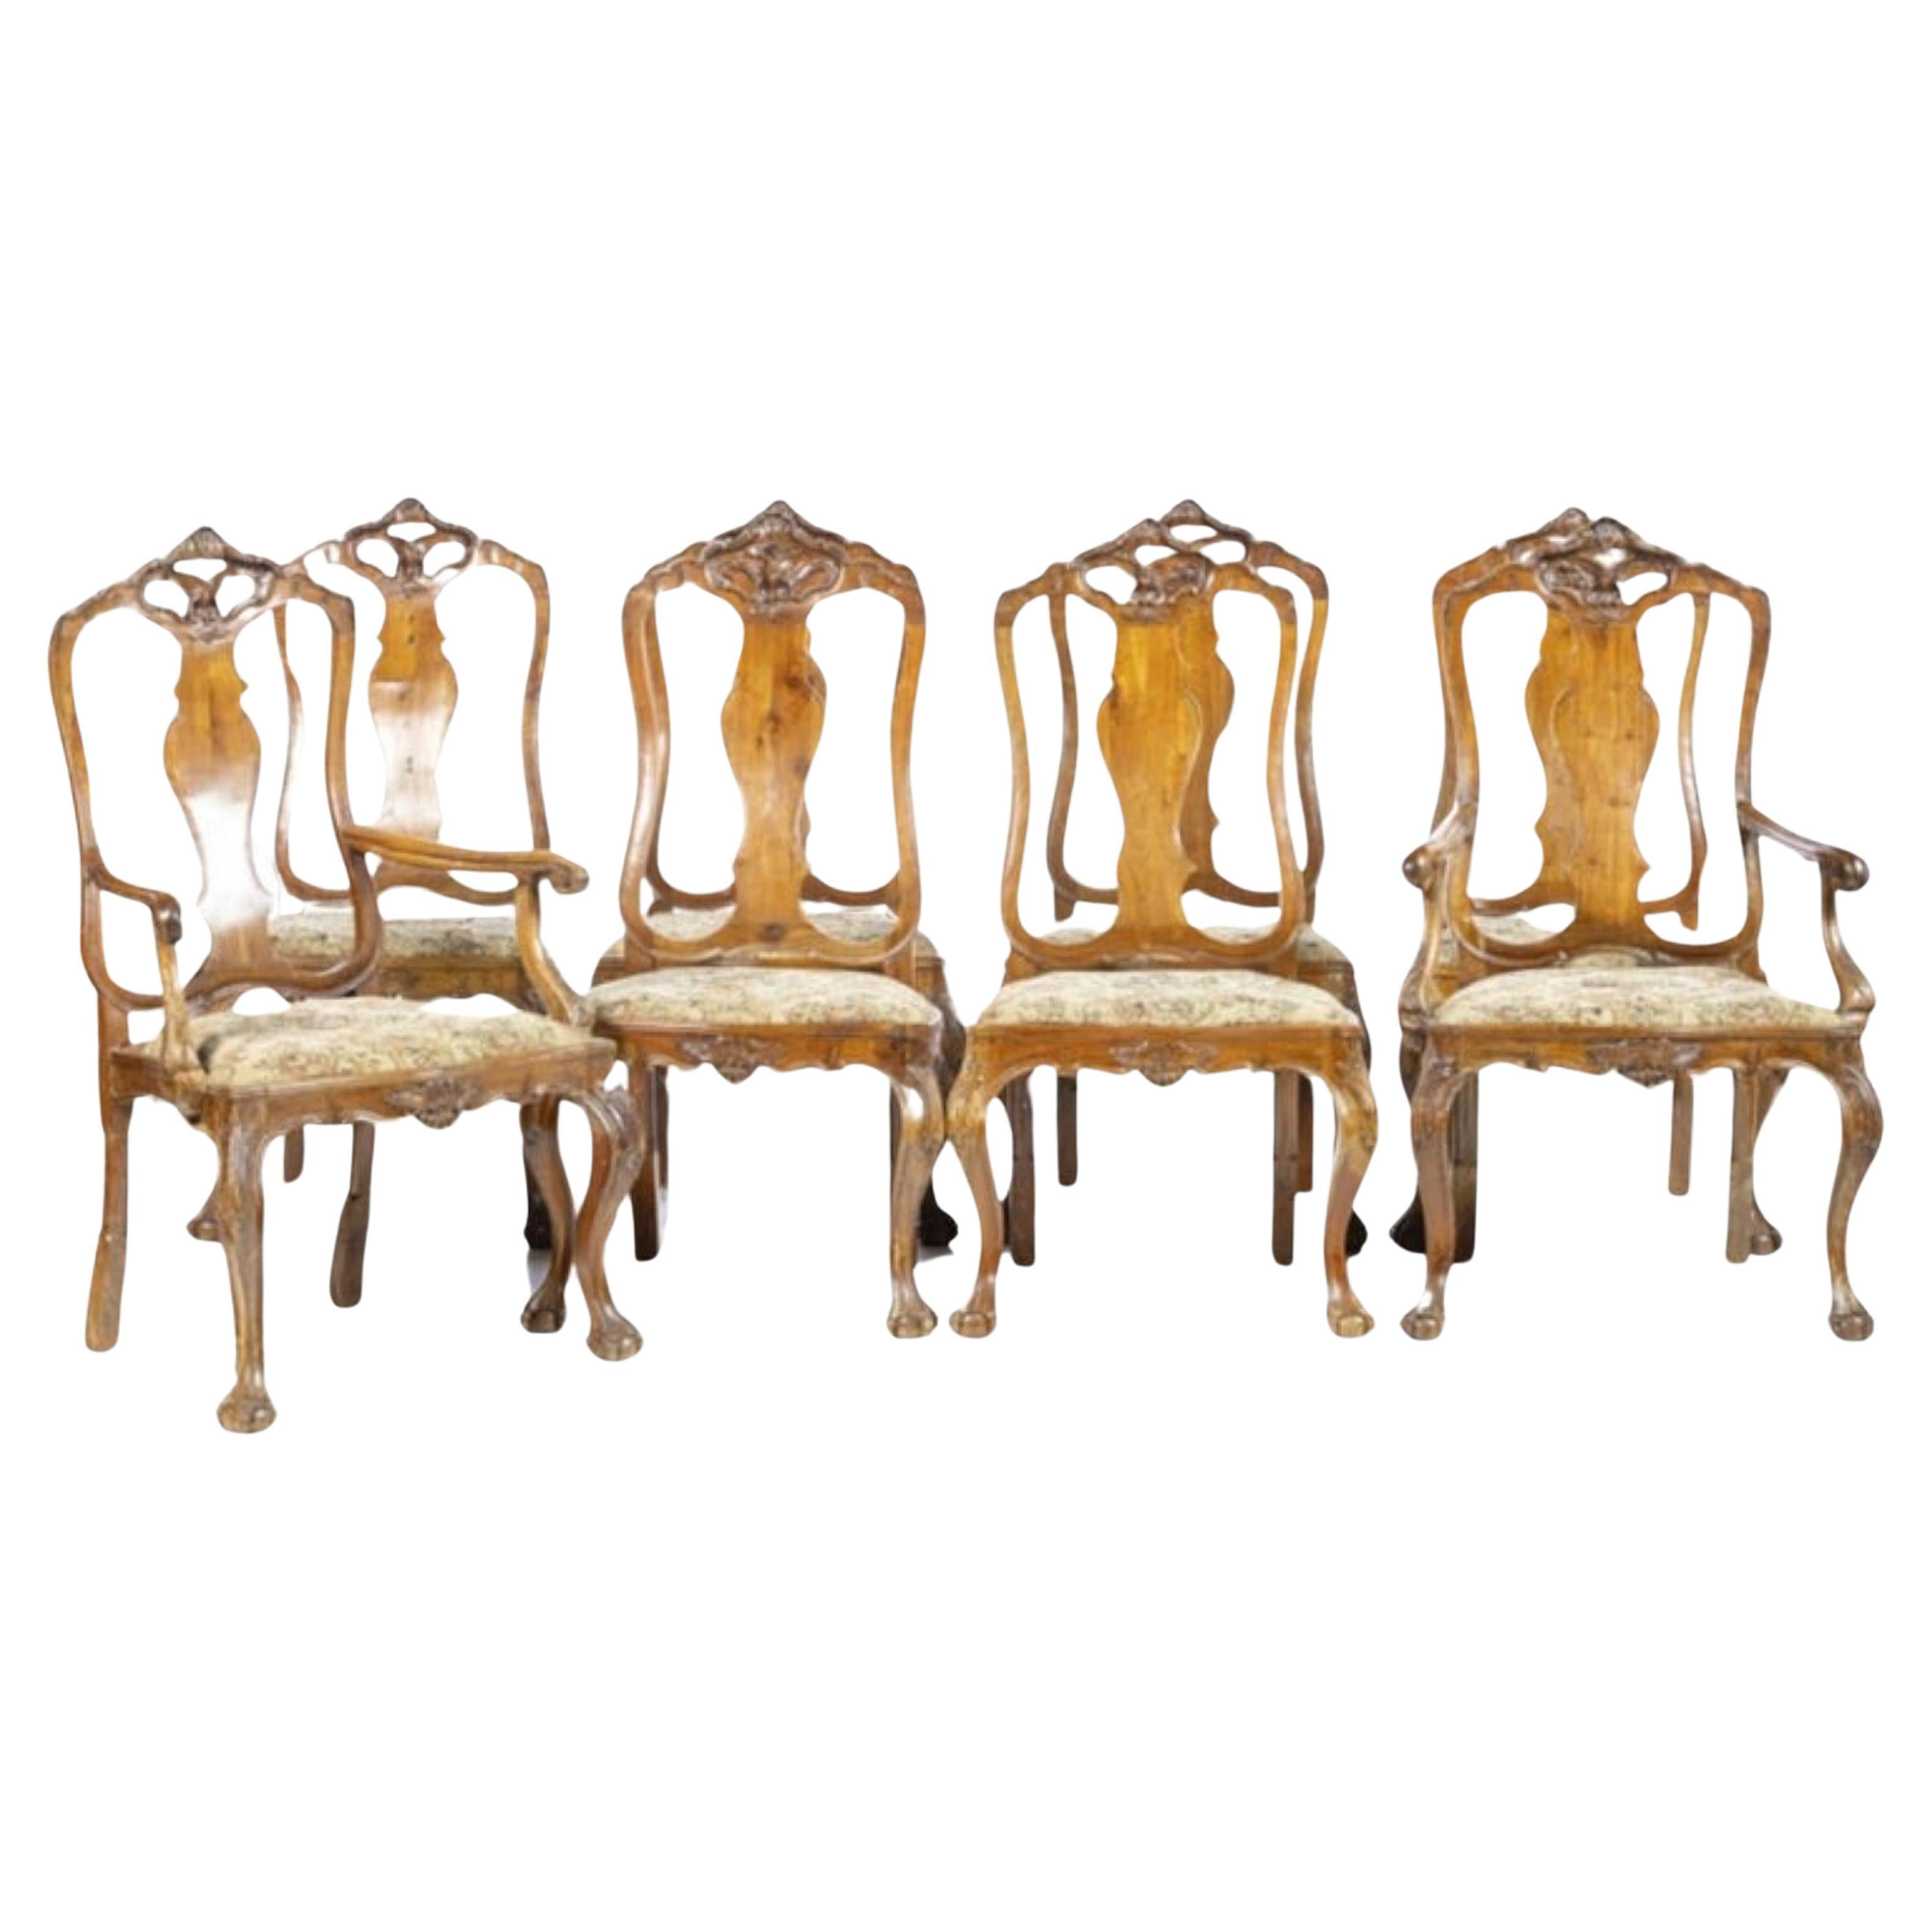 Ensemble de six chaises portugaises et deux chaises D. João D. I.I. du 18e siècle